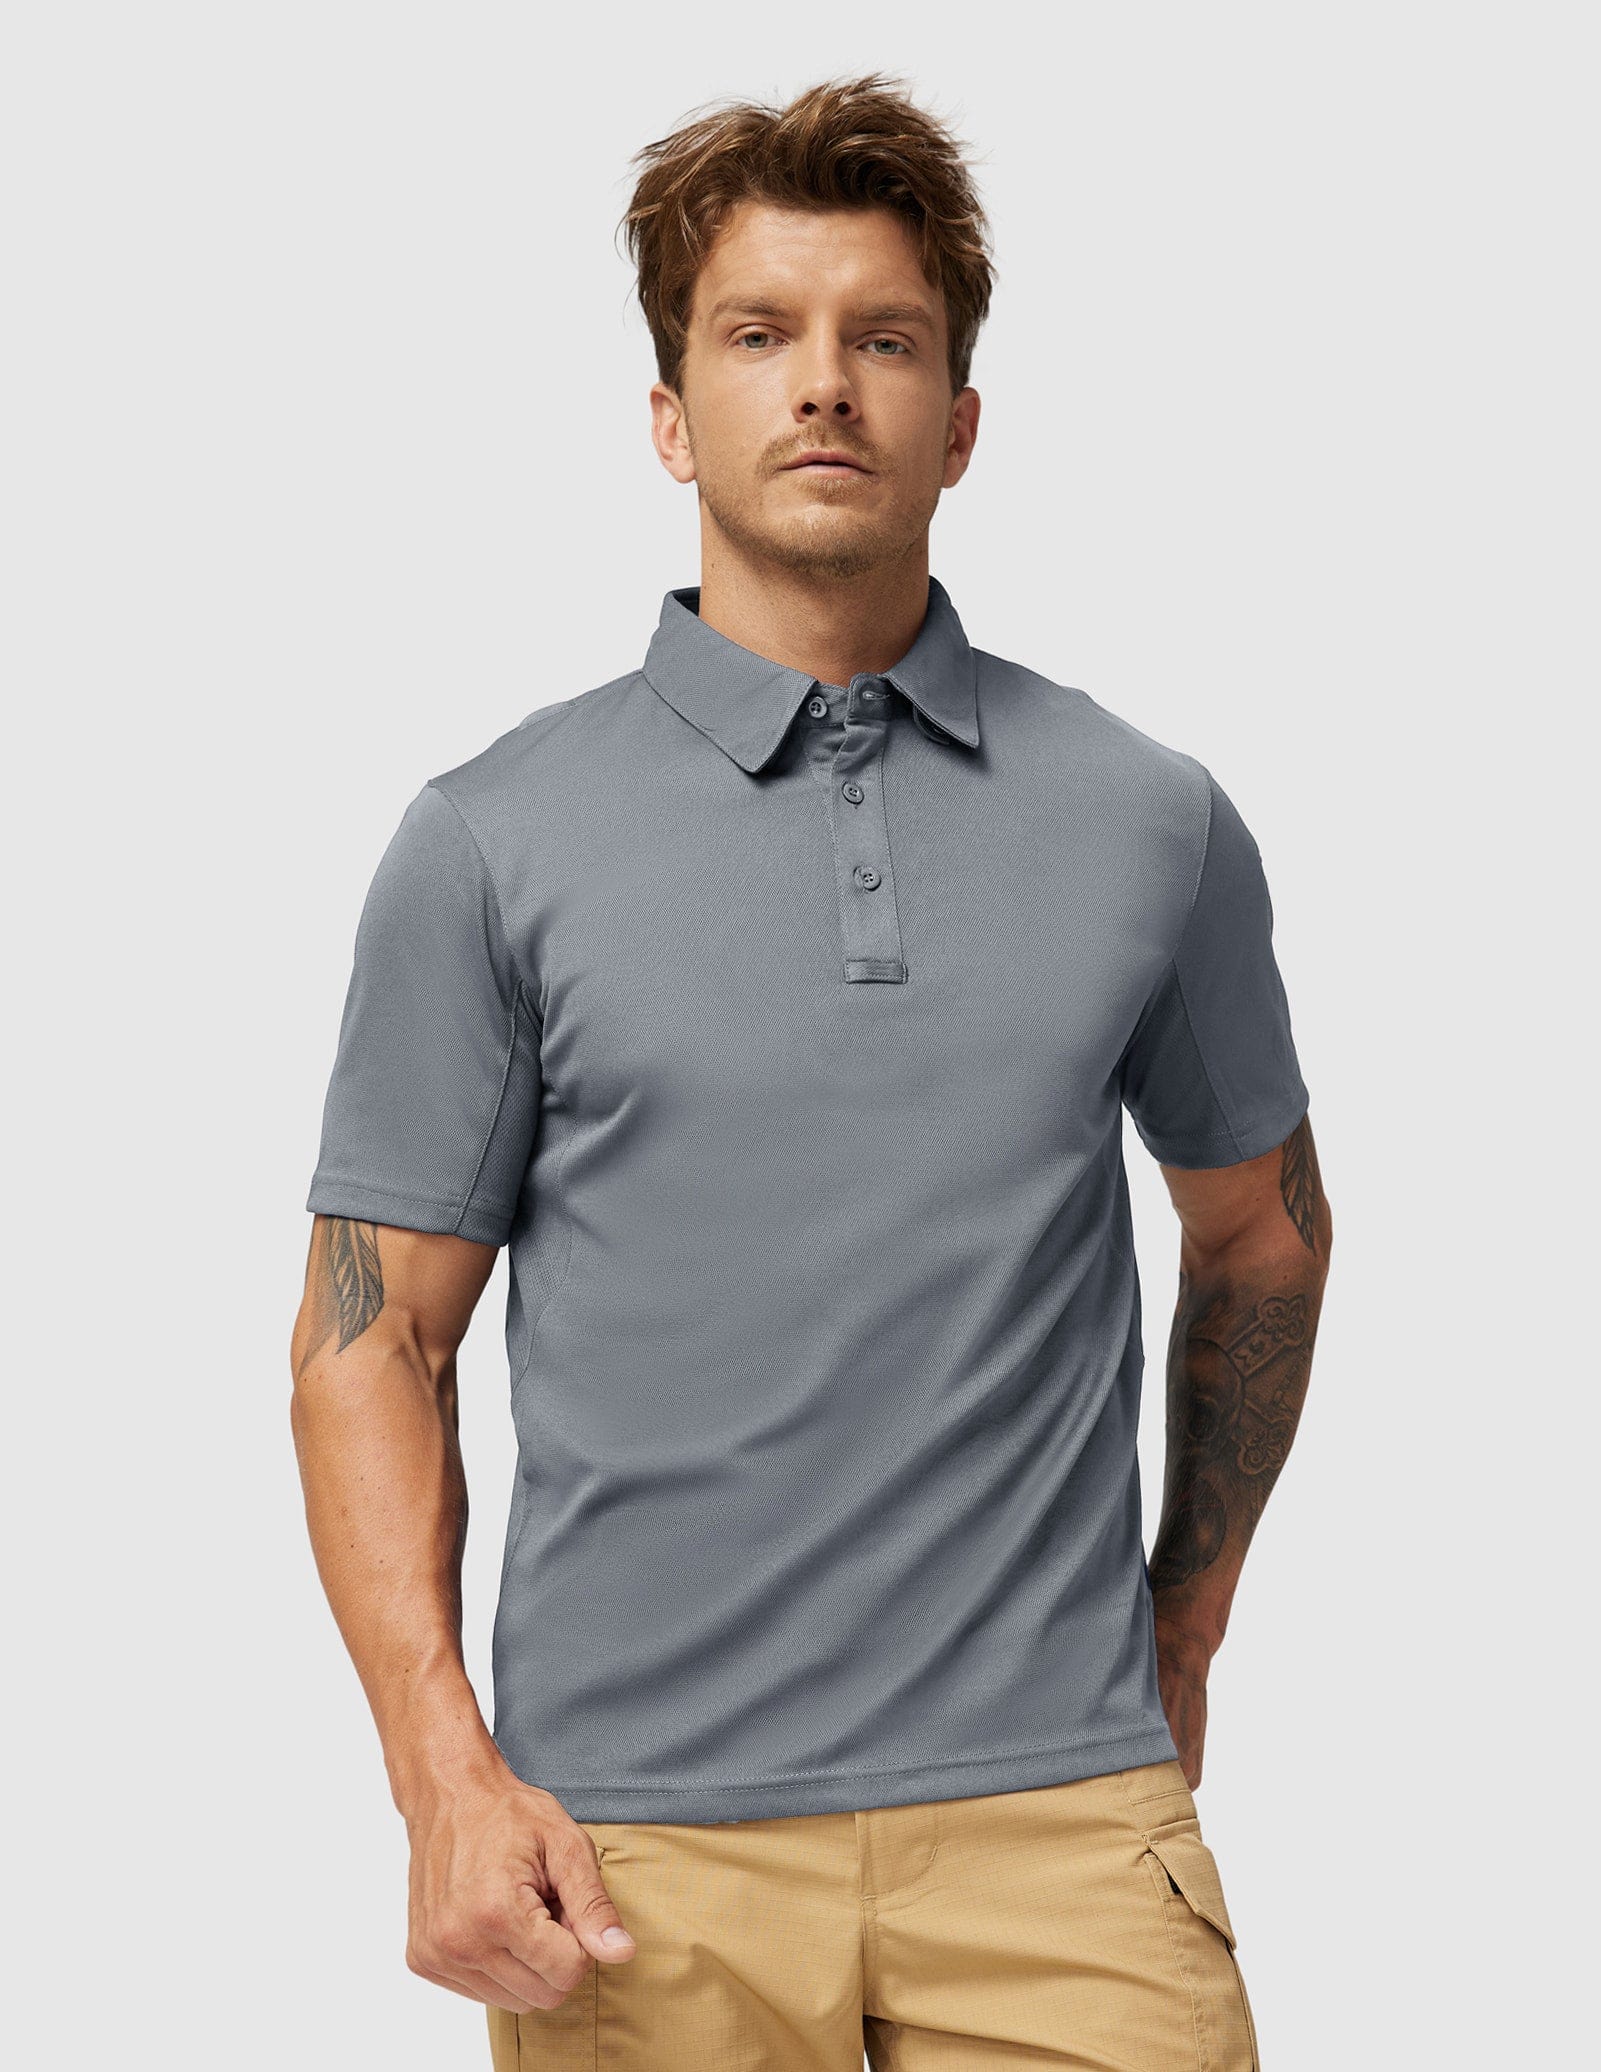 Men's Tactical Polo Shirts Outdoor Performance Collared Shirt Men Polo Light grey / S MIER